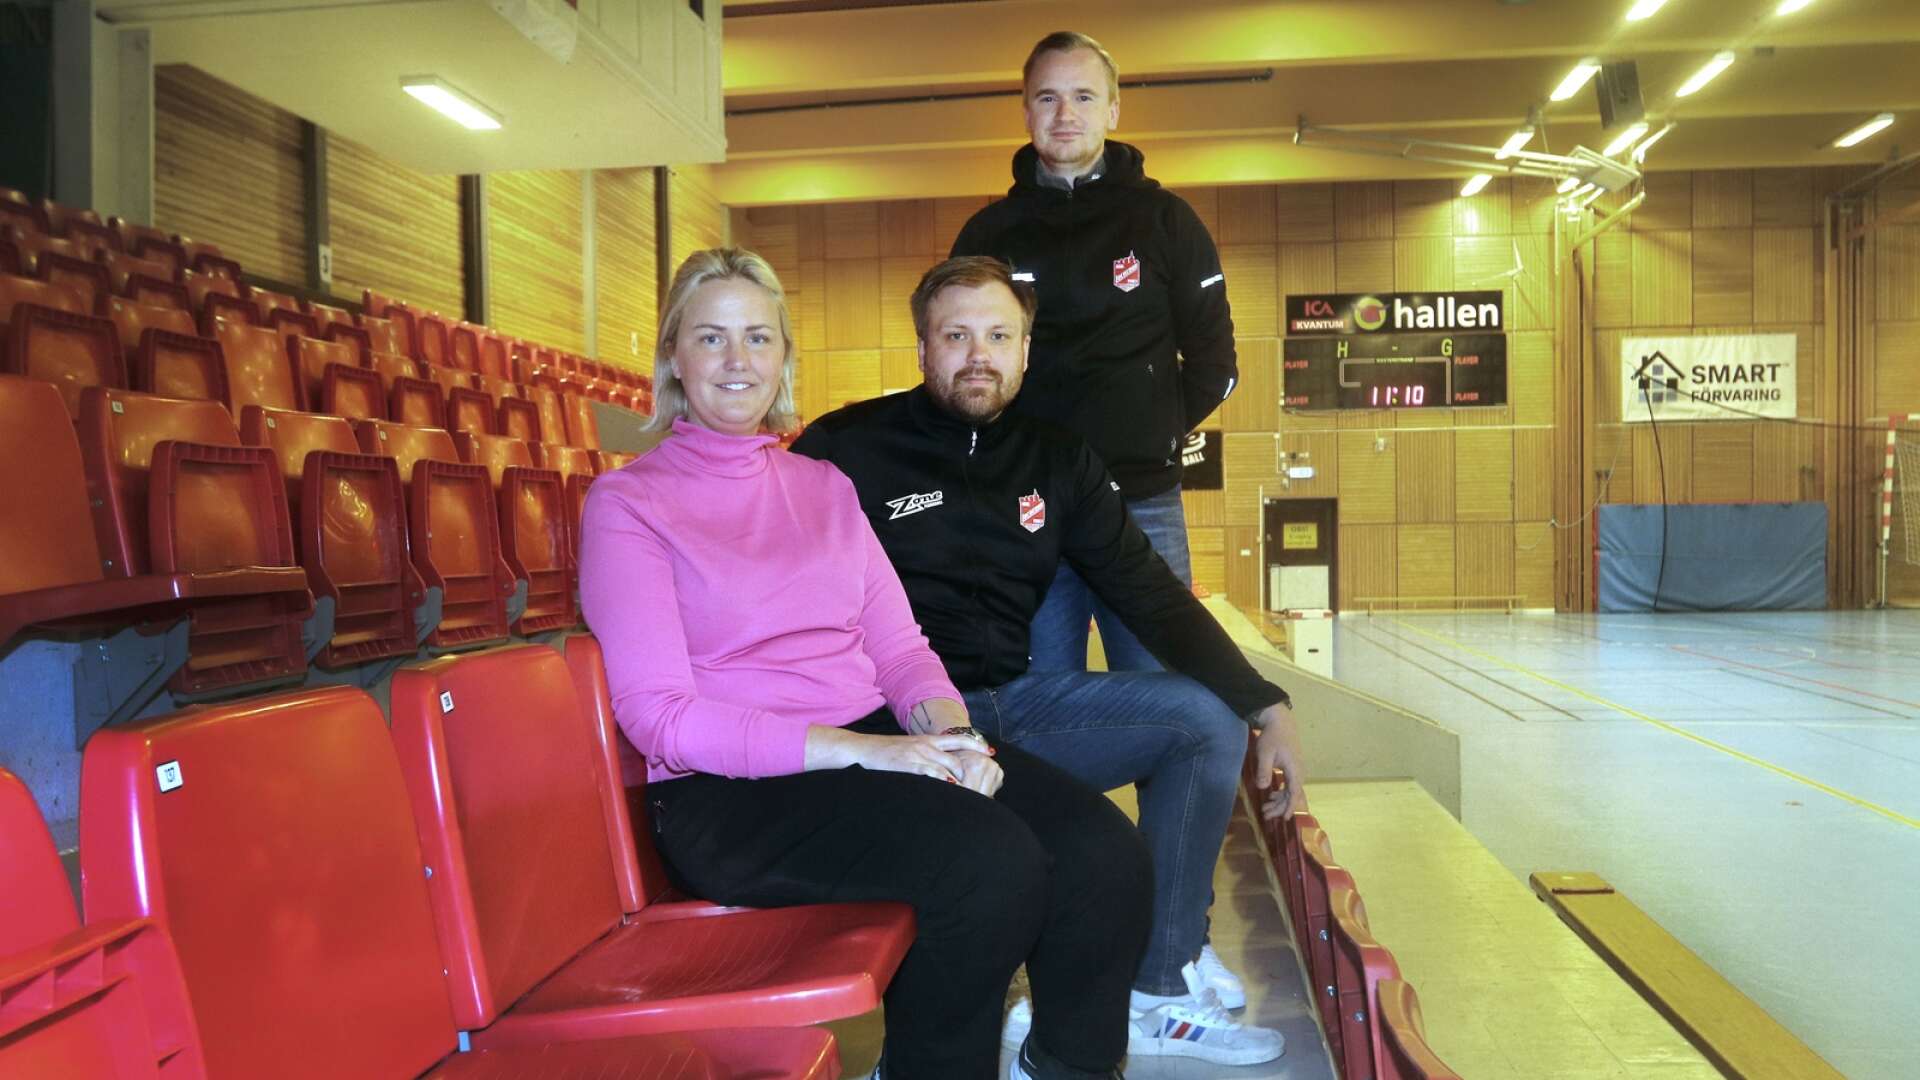 Arbetet inom IBK Lockerud Mariestad går vidare för klubbchefen Elin Werner, Mickael Fredriksson och Jesper Myrlund (stående). Fredriksson fortsätter som damtränare i SSL medan Myrlund lämnar herrlaget och koncentrerar sig på att vara sportchef. 